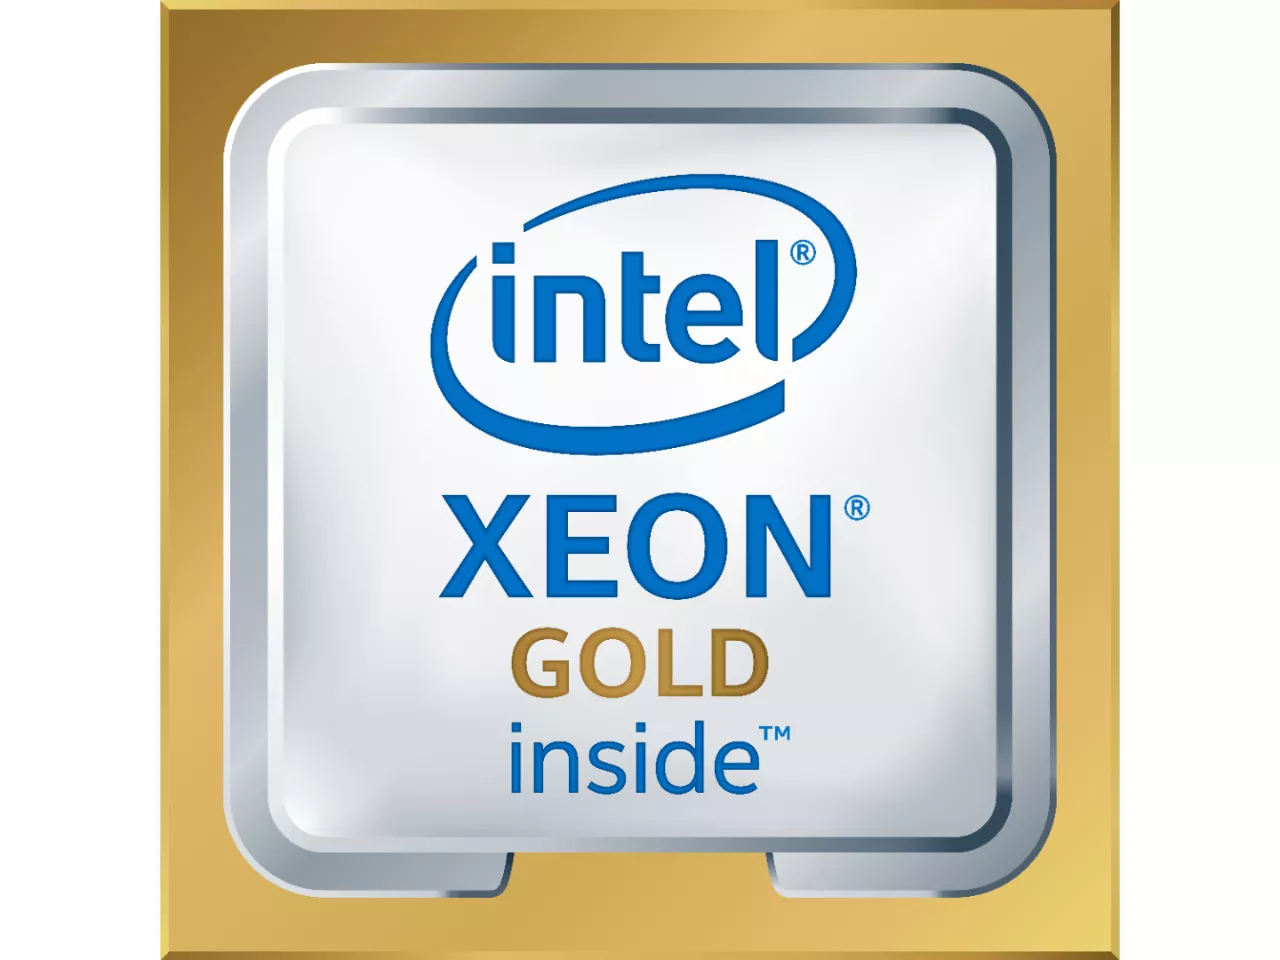 Achat Intel Xeon 5218R au meilleur prix